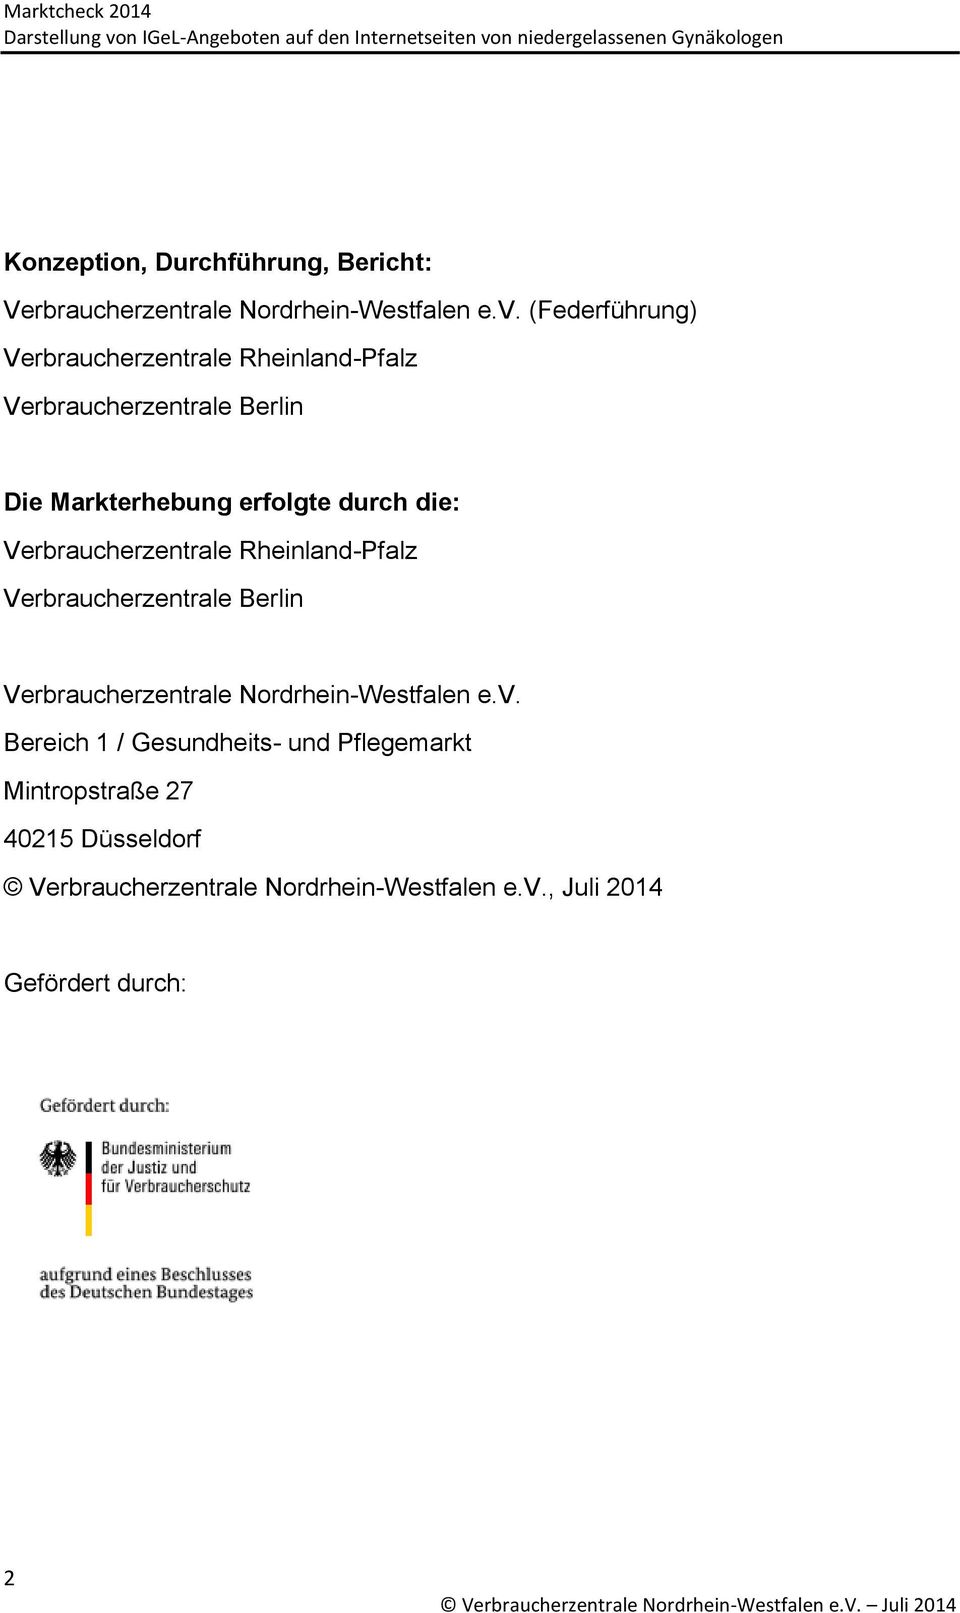 die: Verbraucherzentrale Rheinland-Pfalz Verbraucherzentrale Berlin Verbraucherzentrale Nordrhein-Westfalen e.v.